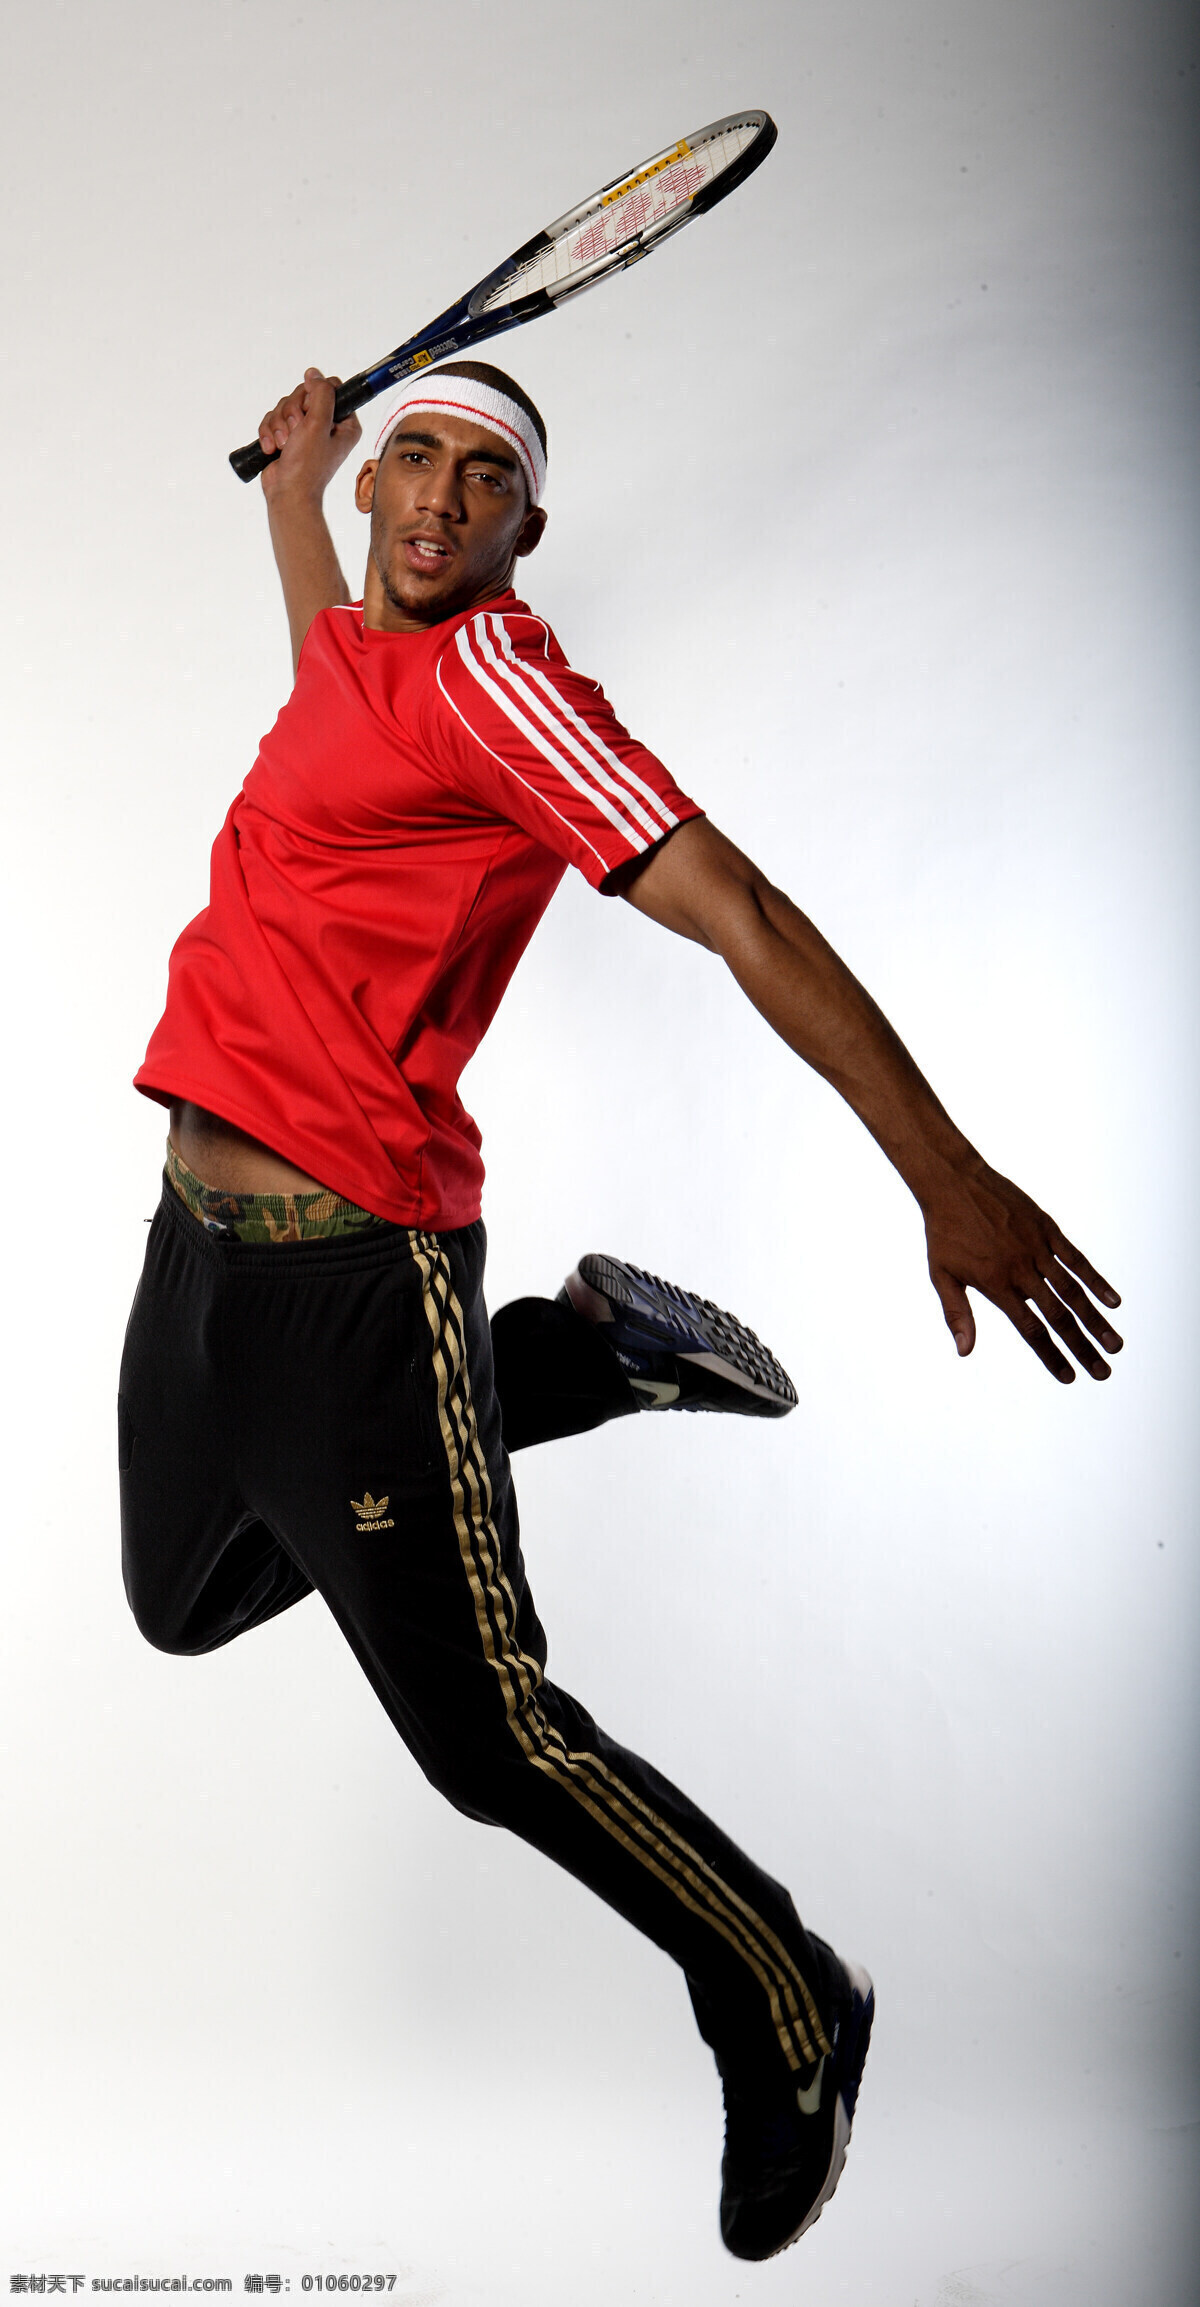 网球 运动服装 黑人 运动 防守 强壮 球服 红色 黑酷 活力 服装 运动活力 男性男人 人物图库